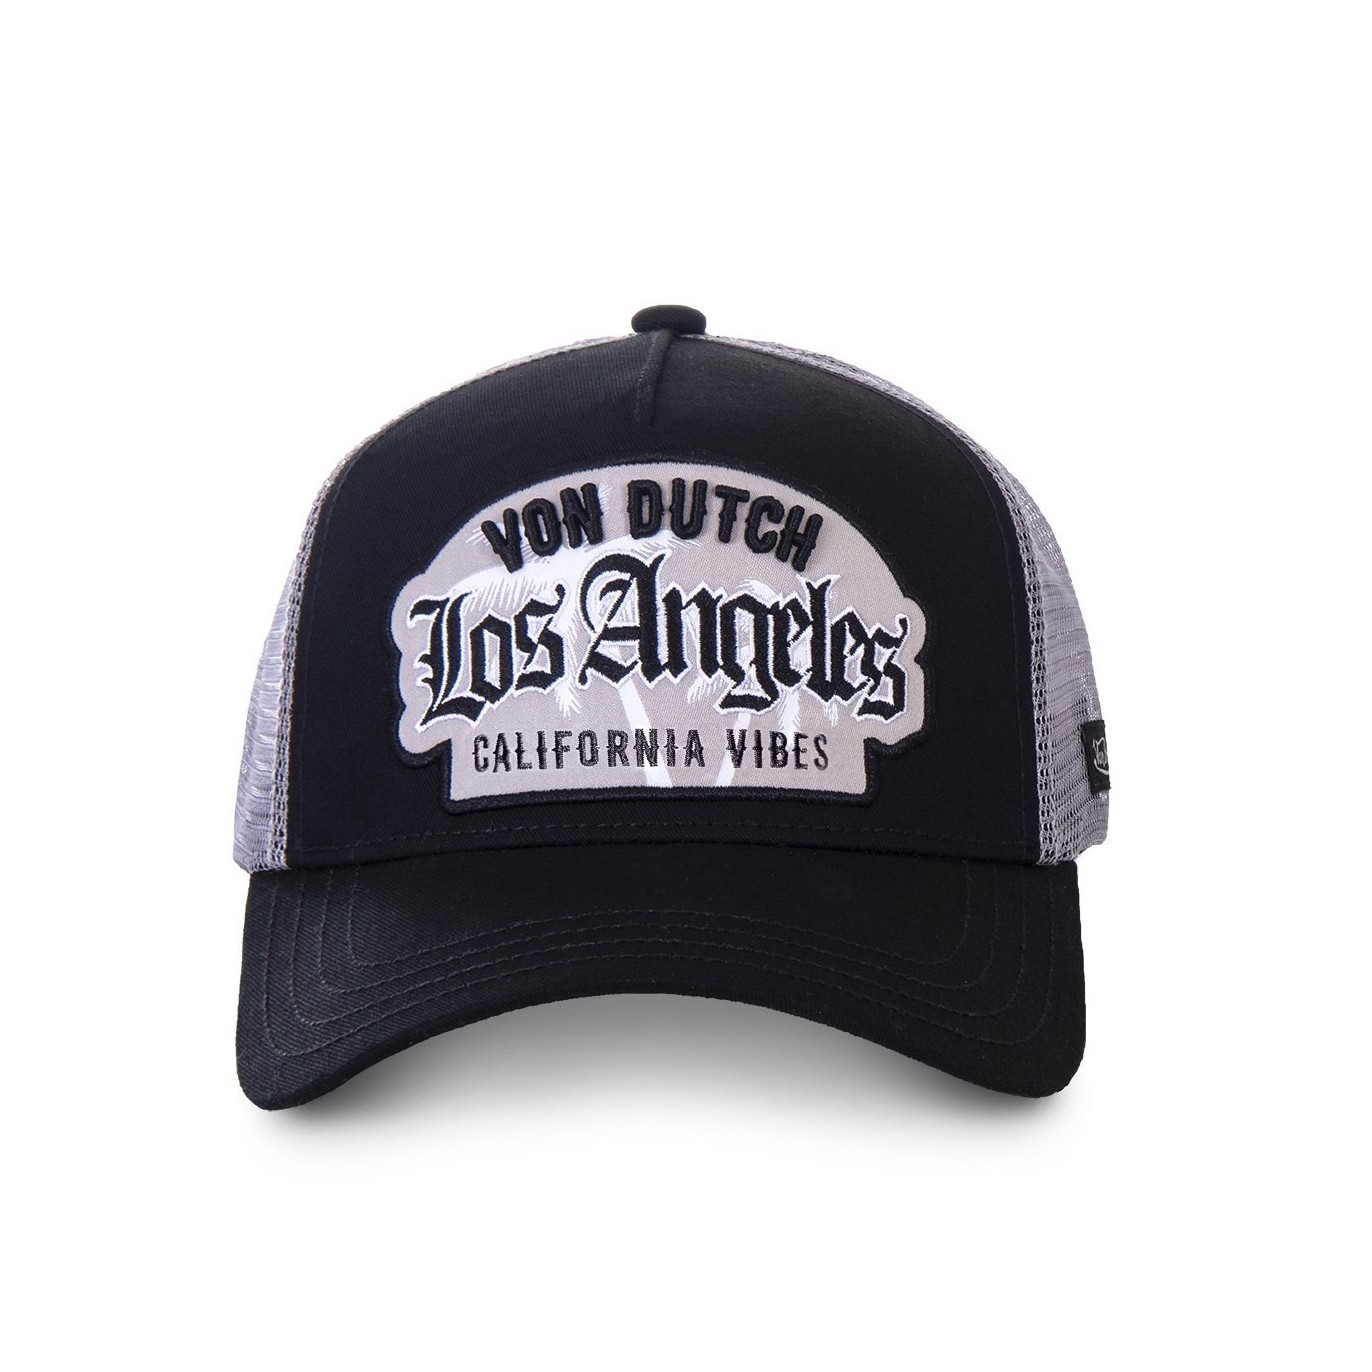 Black Von Dutch Los Angeles baseball cap - Von Dutch